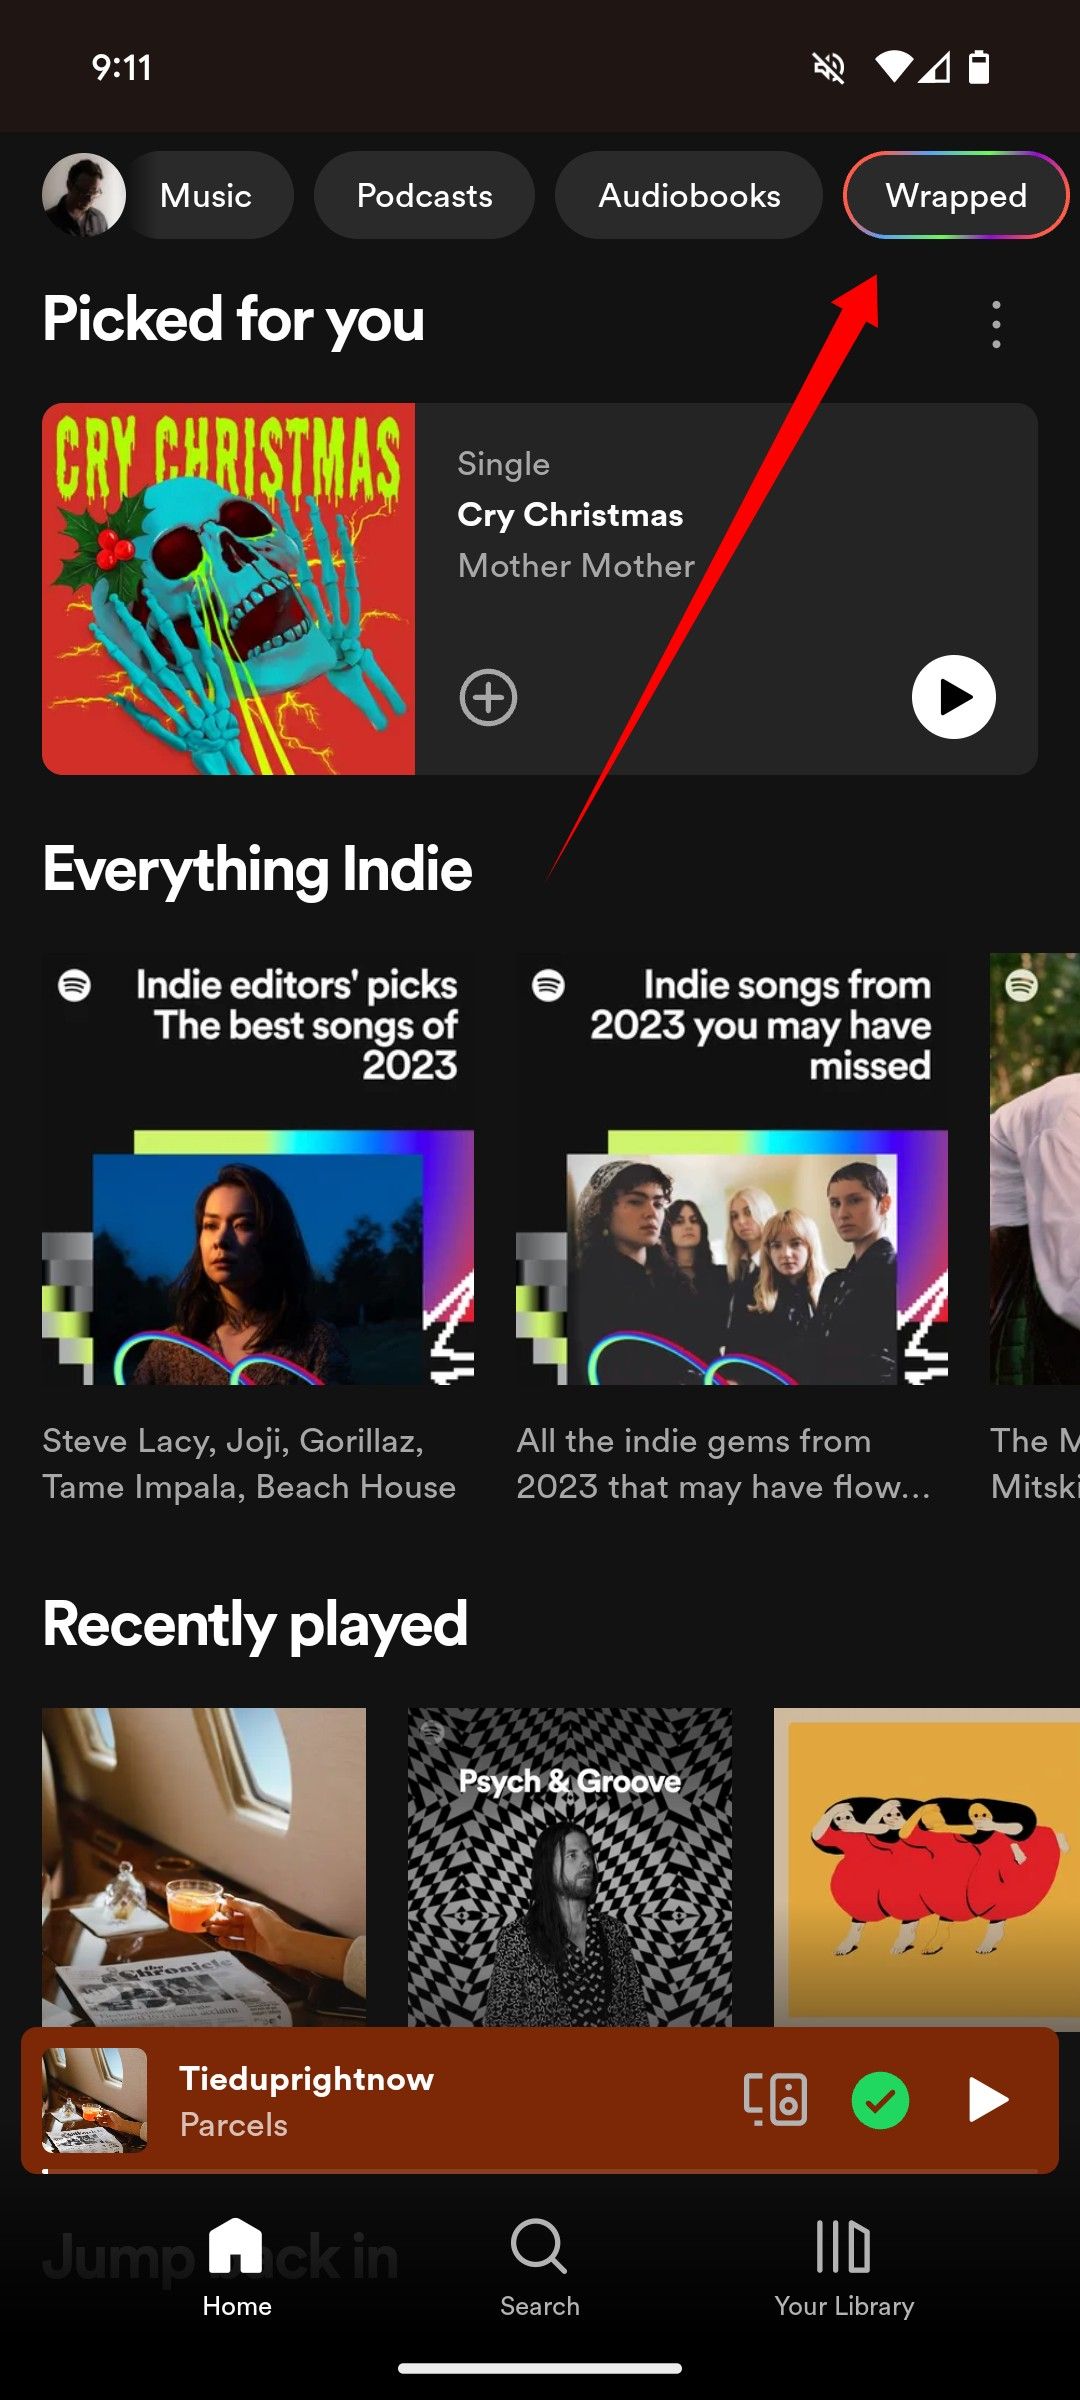 Uma seta apontando para o local específico da opção Wrapped no aplicativo Spotify